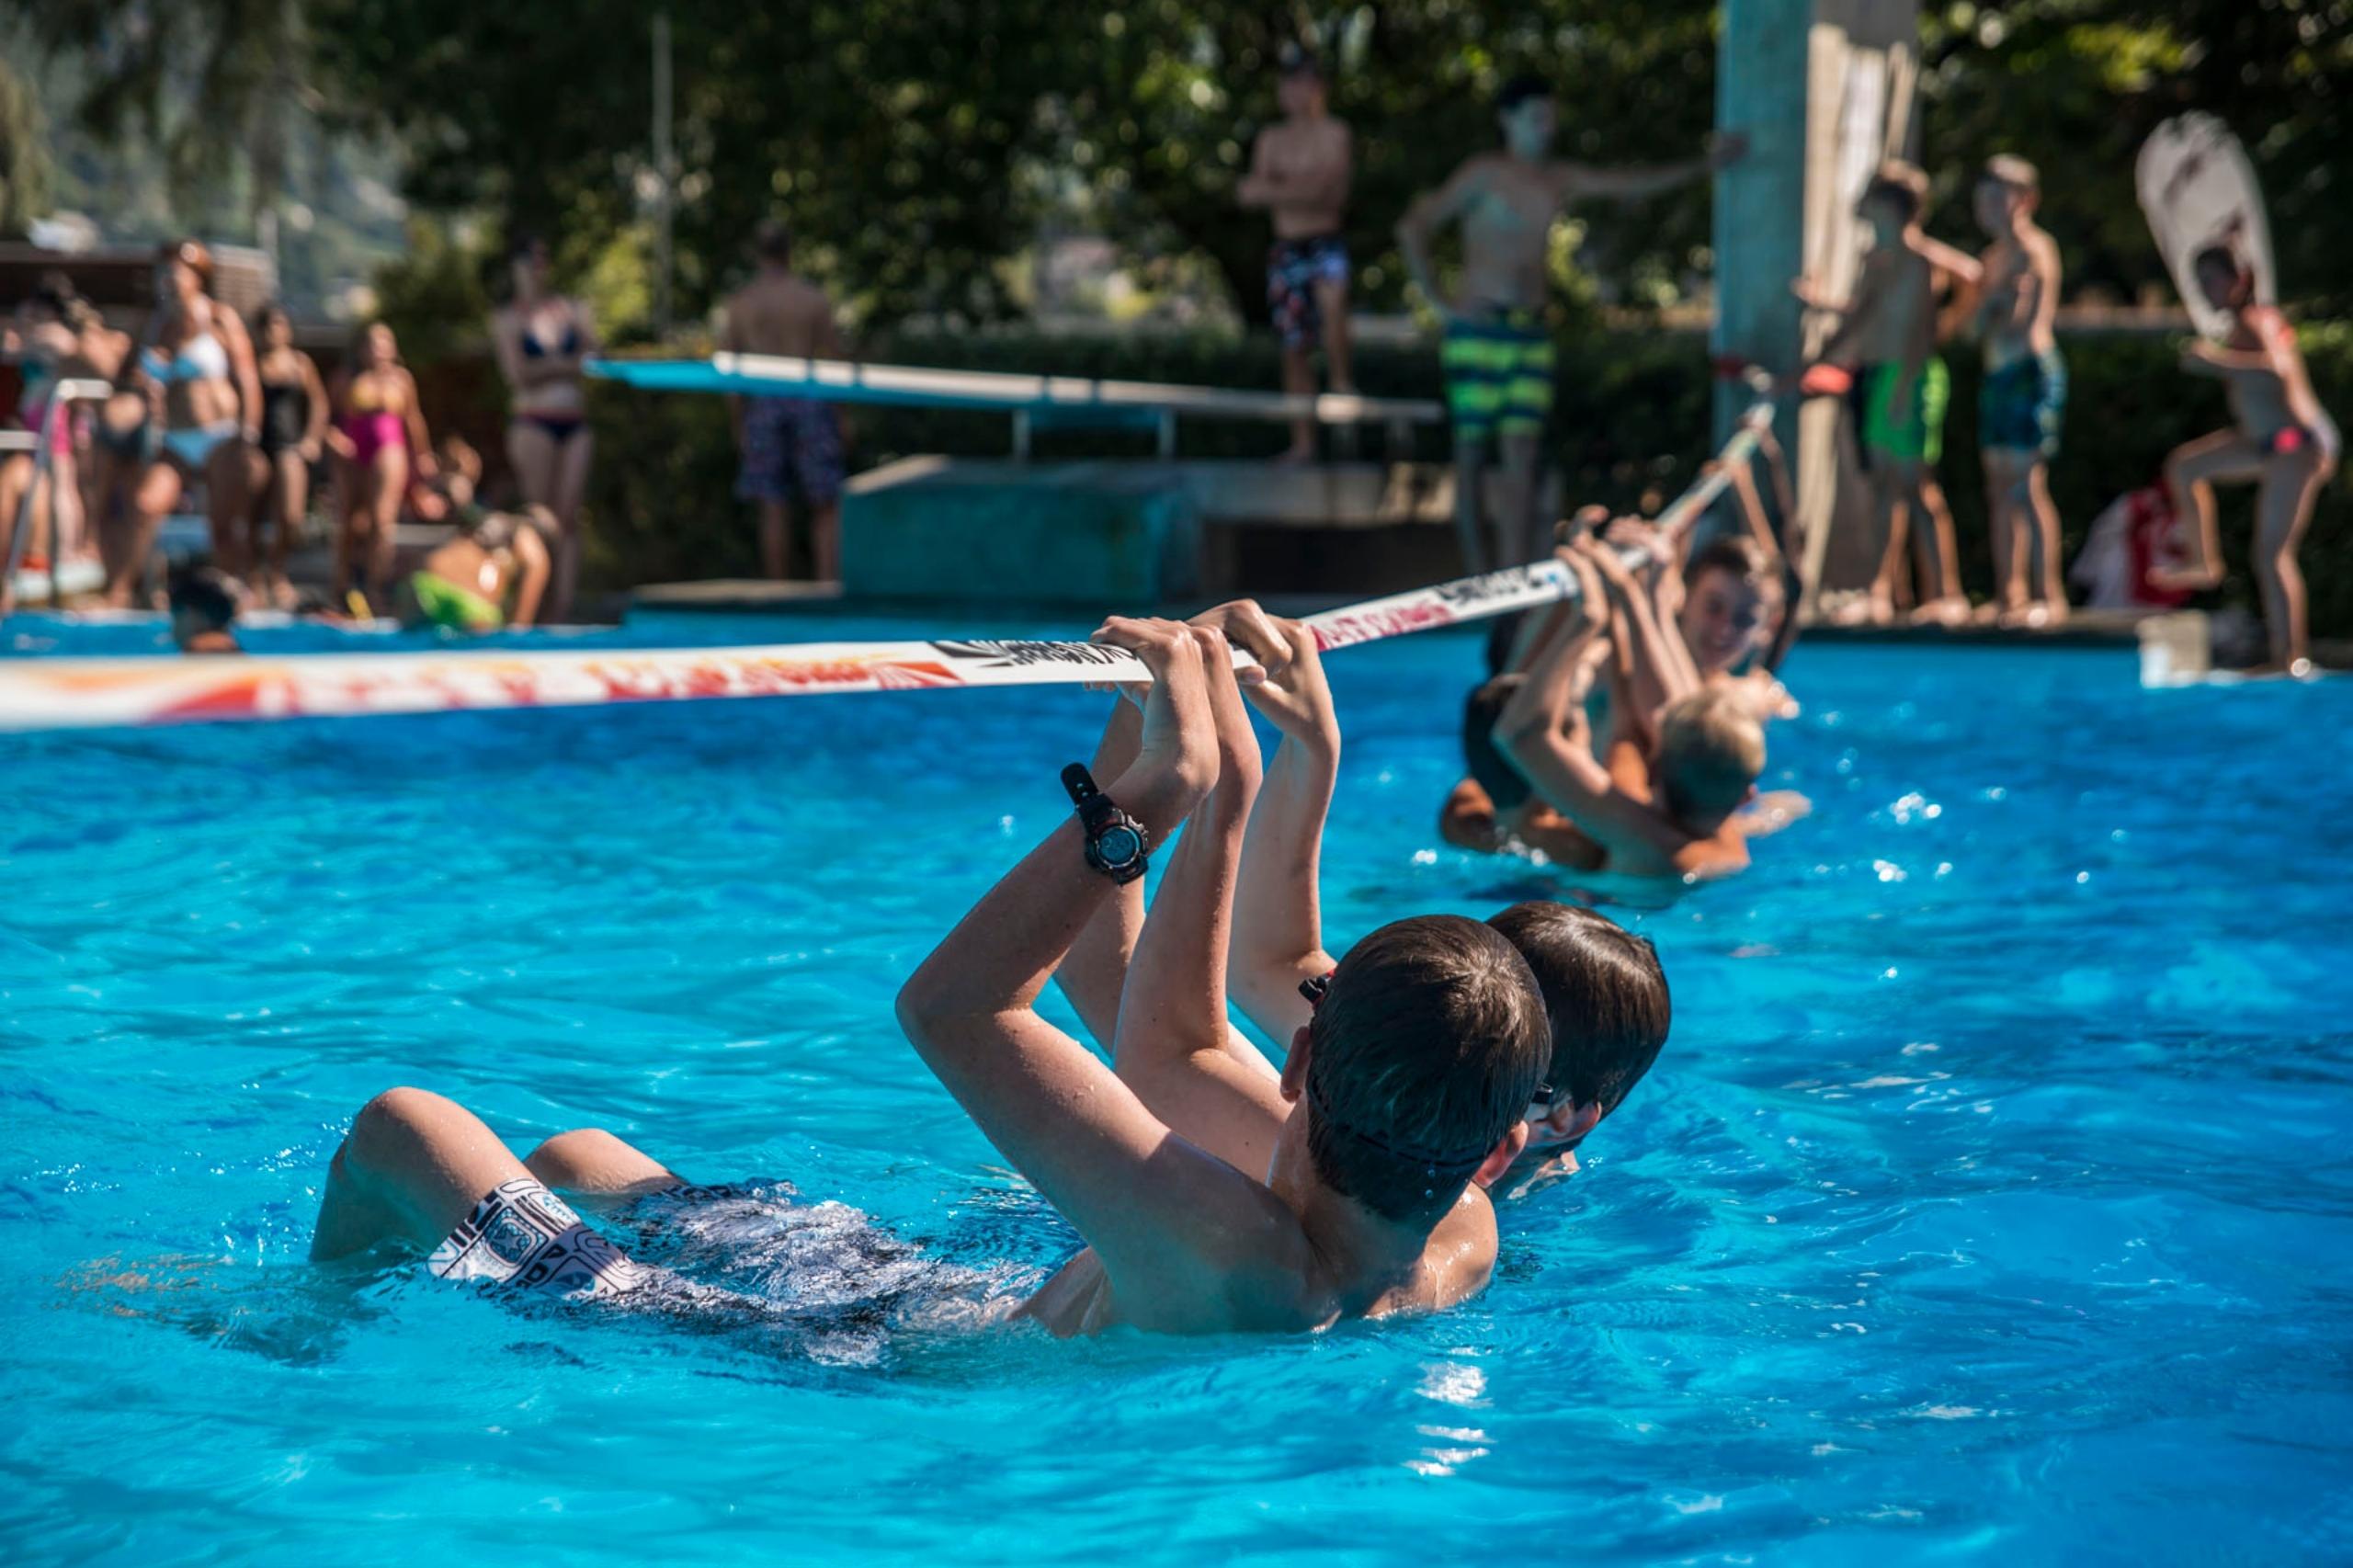 Das öffentliche Schwimmbad Visp ist Teil des Campingplatzes, Spass und Action sind hier garantiert.